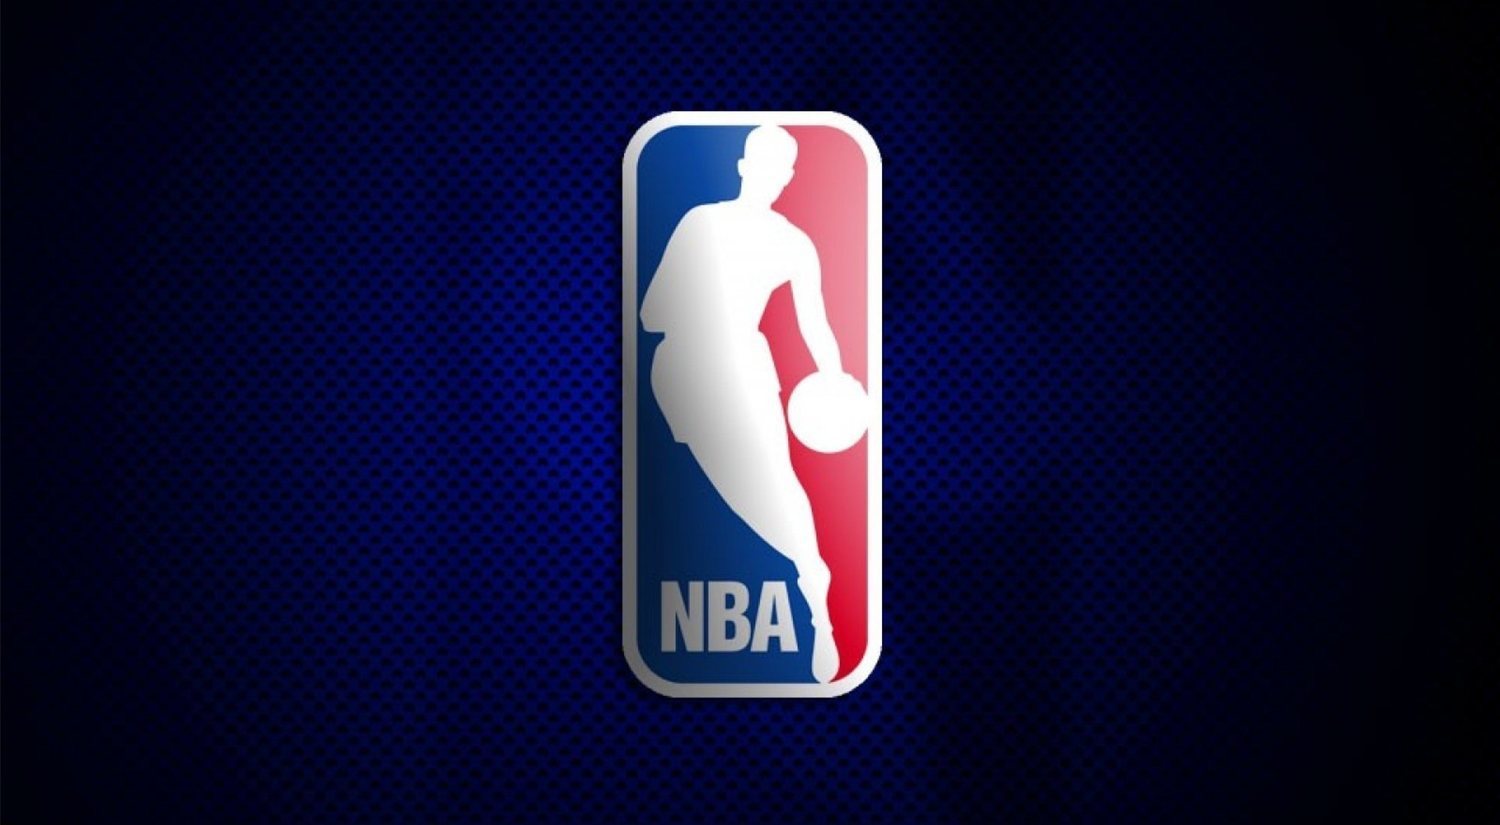 Previa NBA 2019-2020: ¿quién será el campeón?